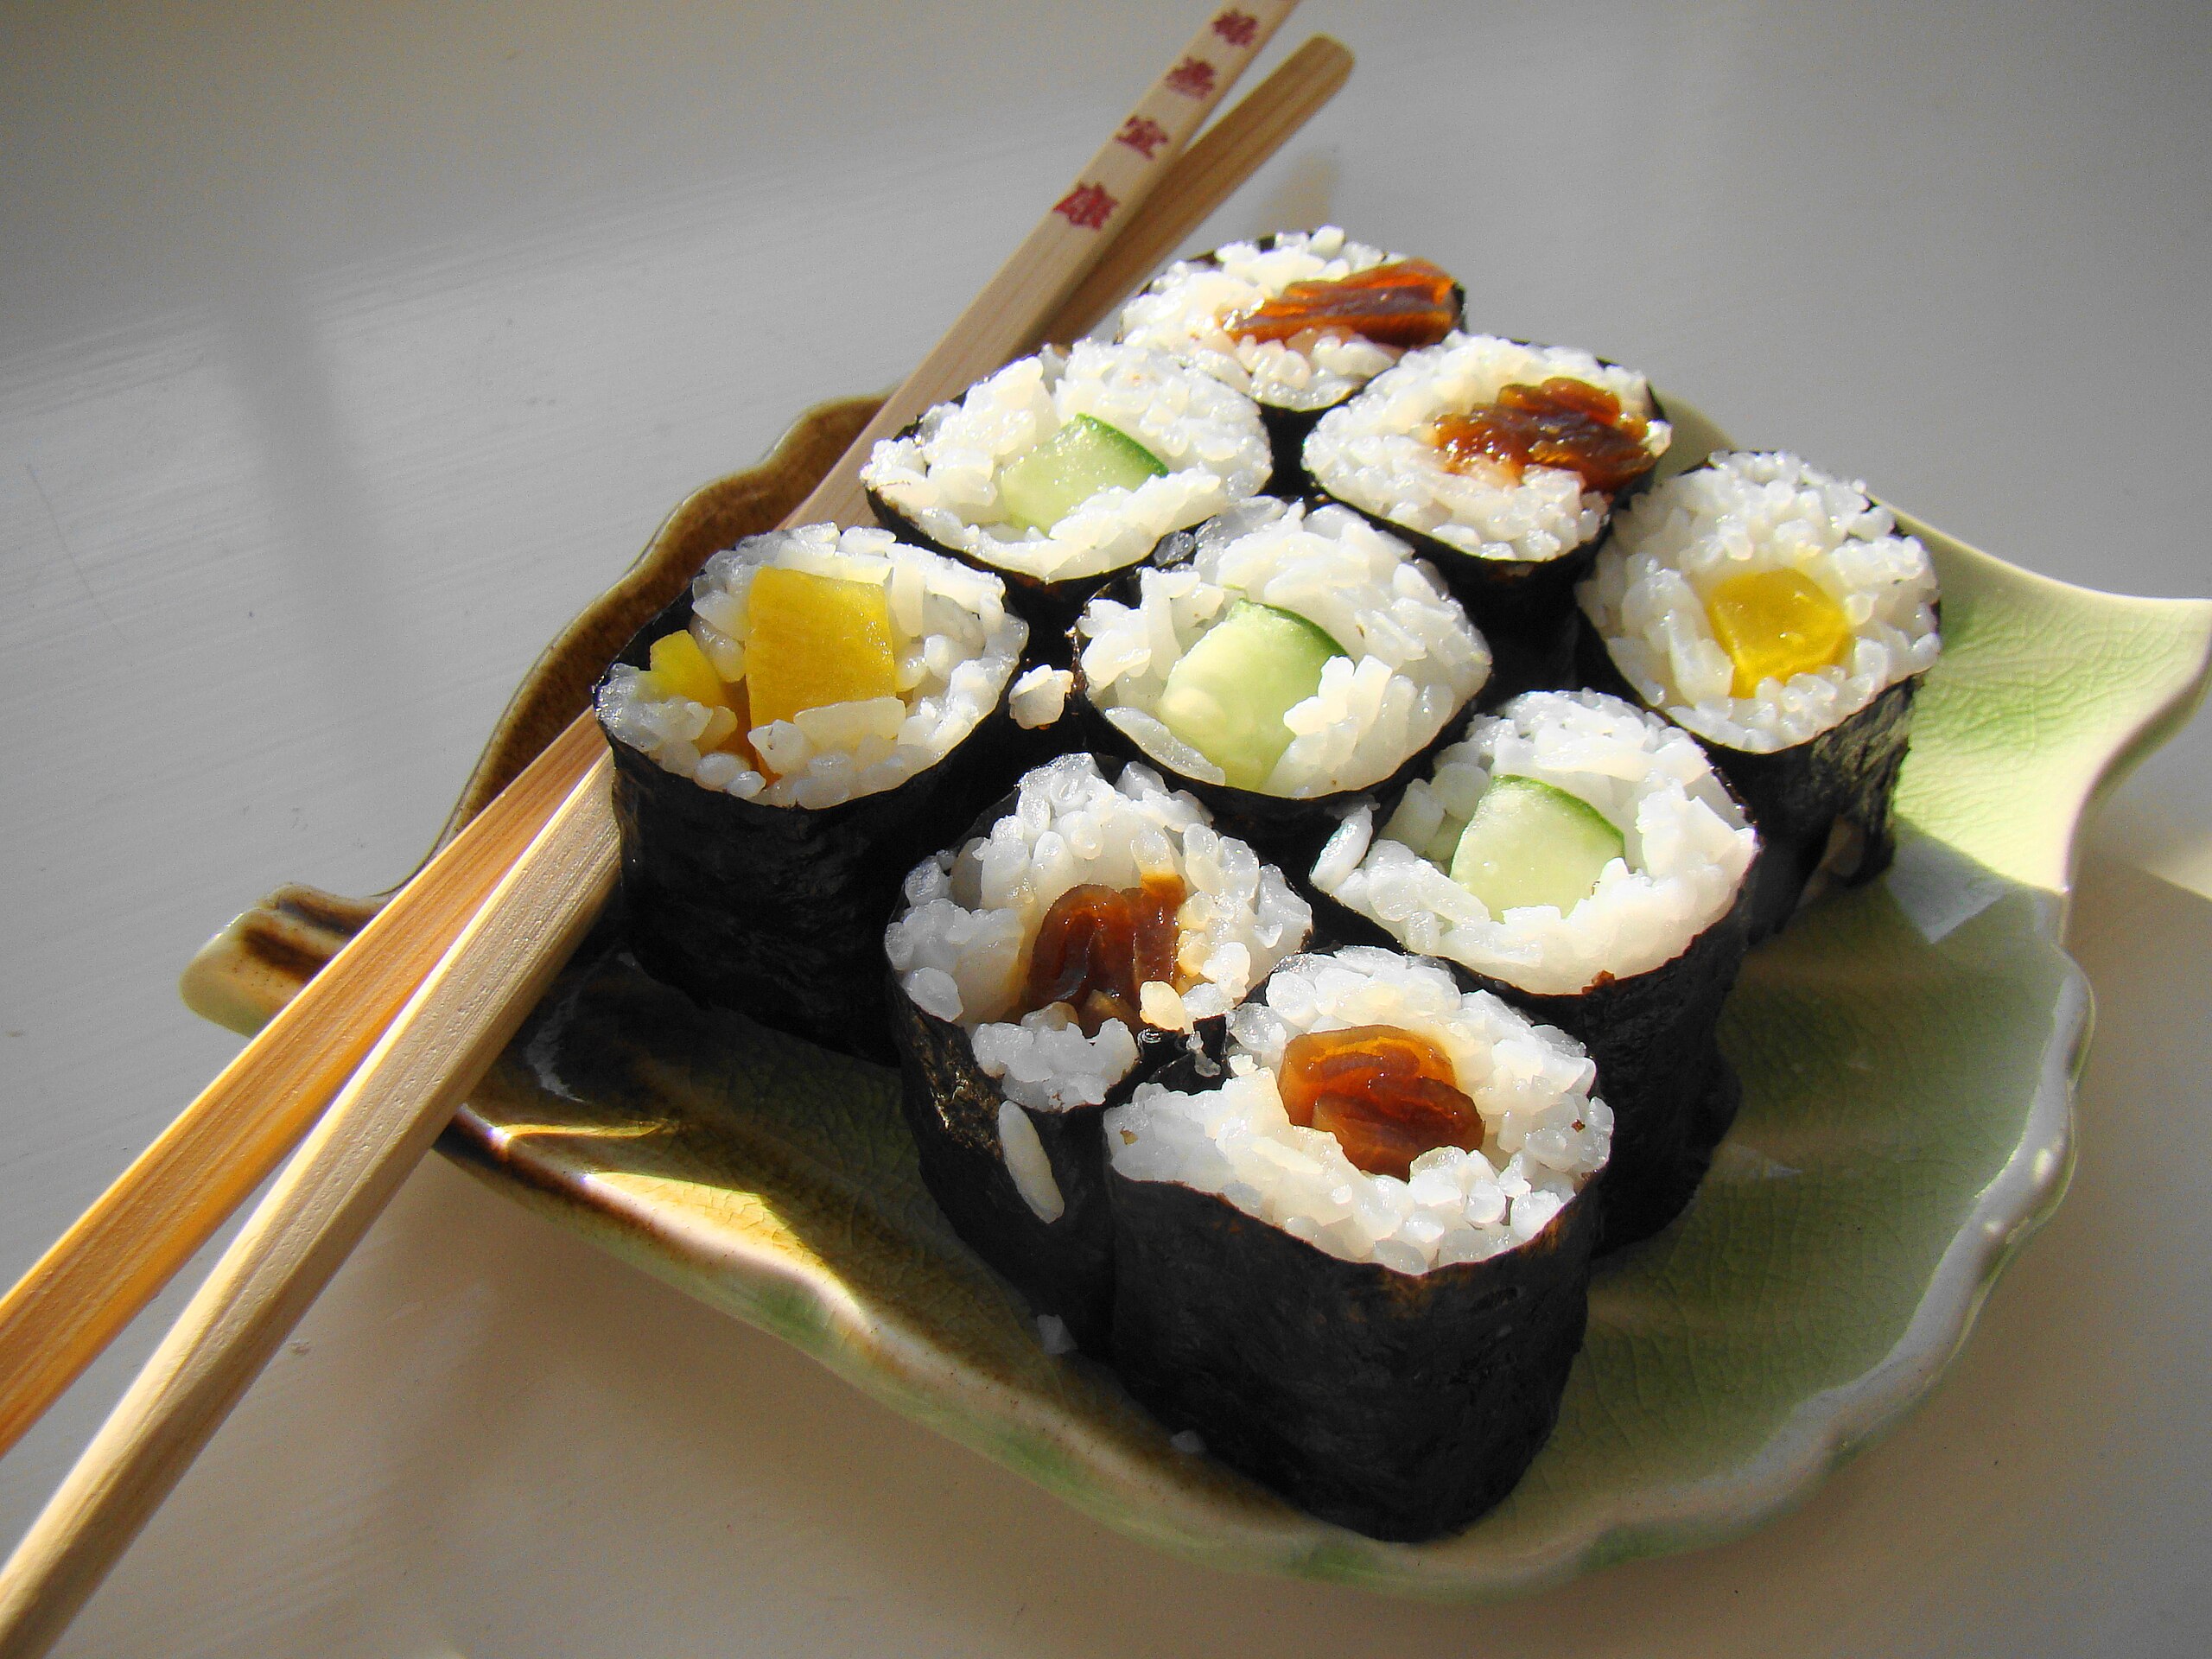 File:Maki Sushi on green leaf plate.jpg - Wikipedia